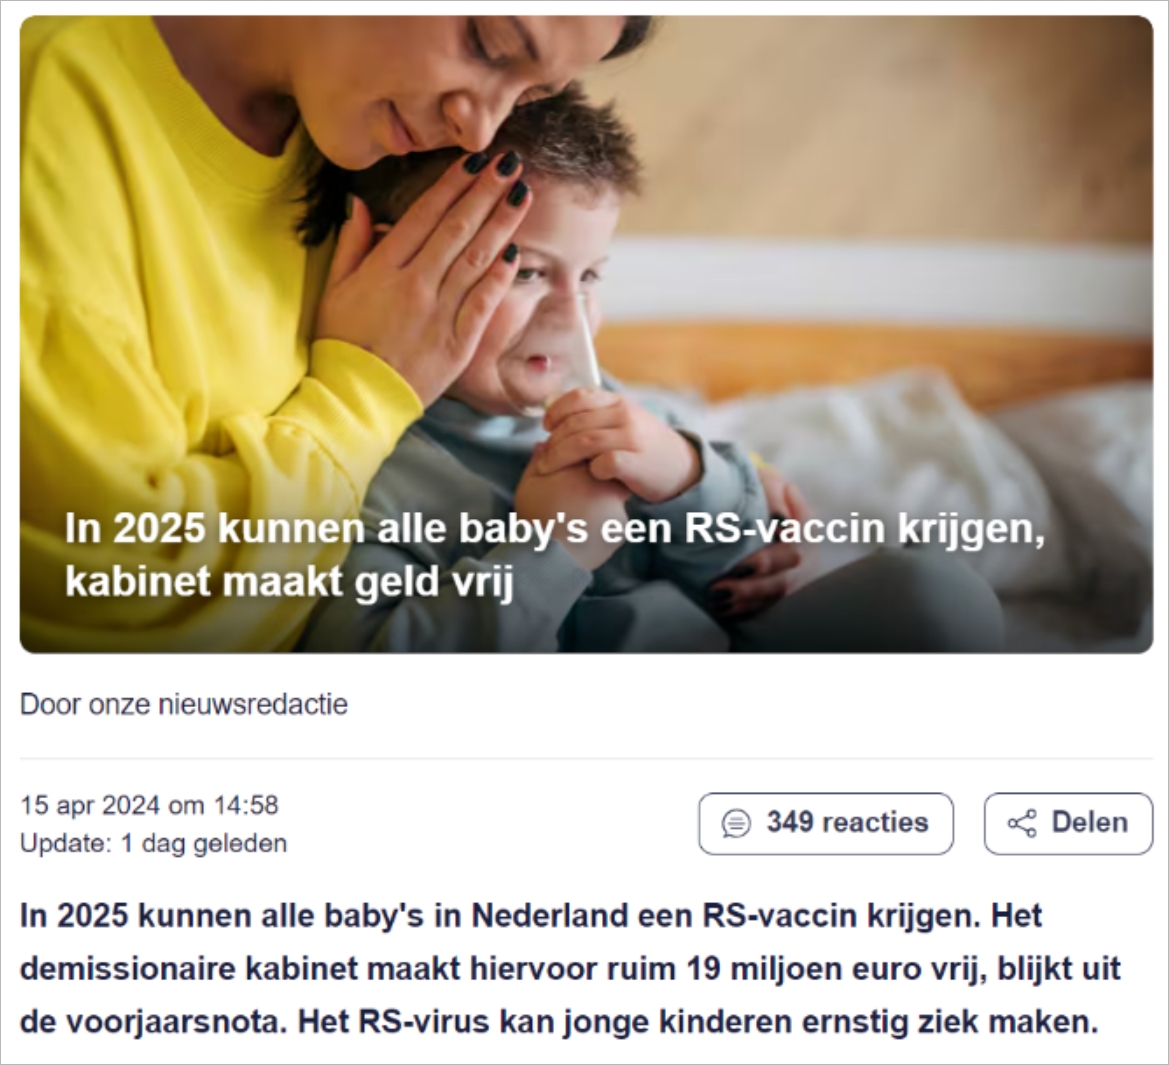 好消息！荷兰这一疫苗接种将纳入国家免疫计划，可免费接种